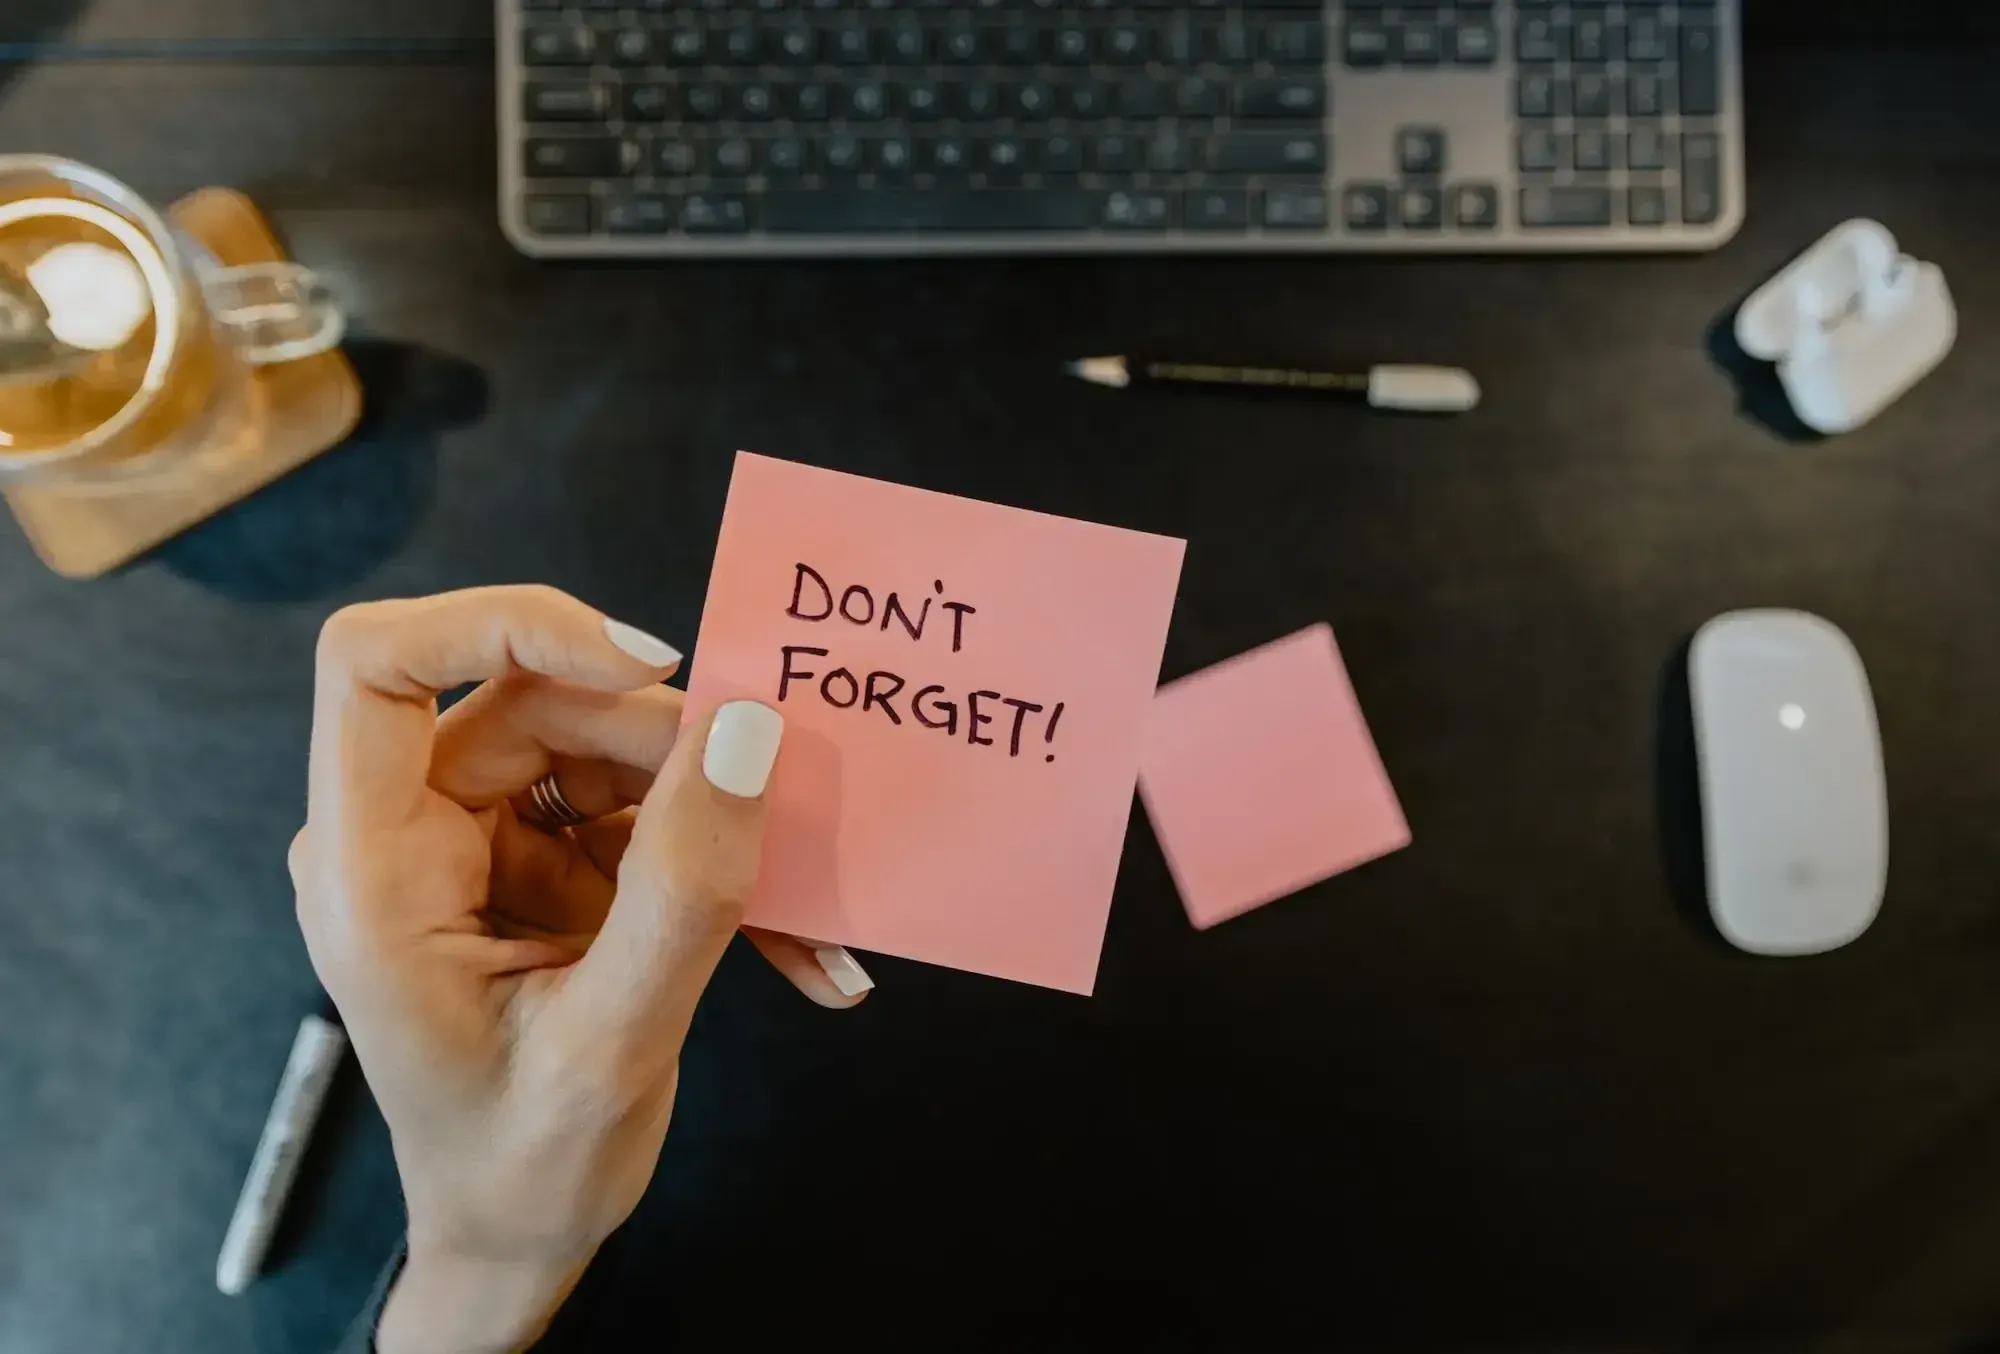 Eine Hand mit weißem Nagellack und einem goldenen Ring, die ein Post-it mit der Aufschrift "Don't forget!" hält. Im Hintergrund ist ein Schreibtisch mit einer Tastatur, einer Maus, Stiften und einem Glas zu sehen.